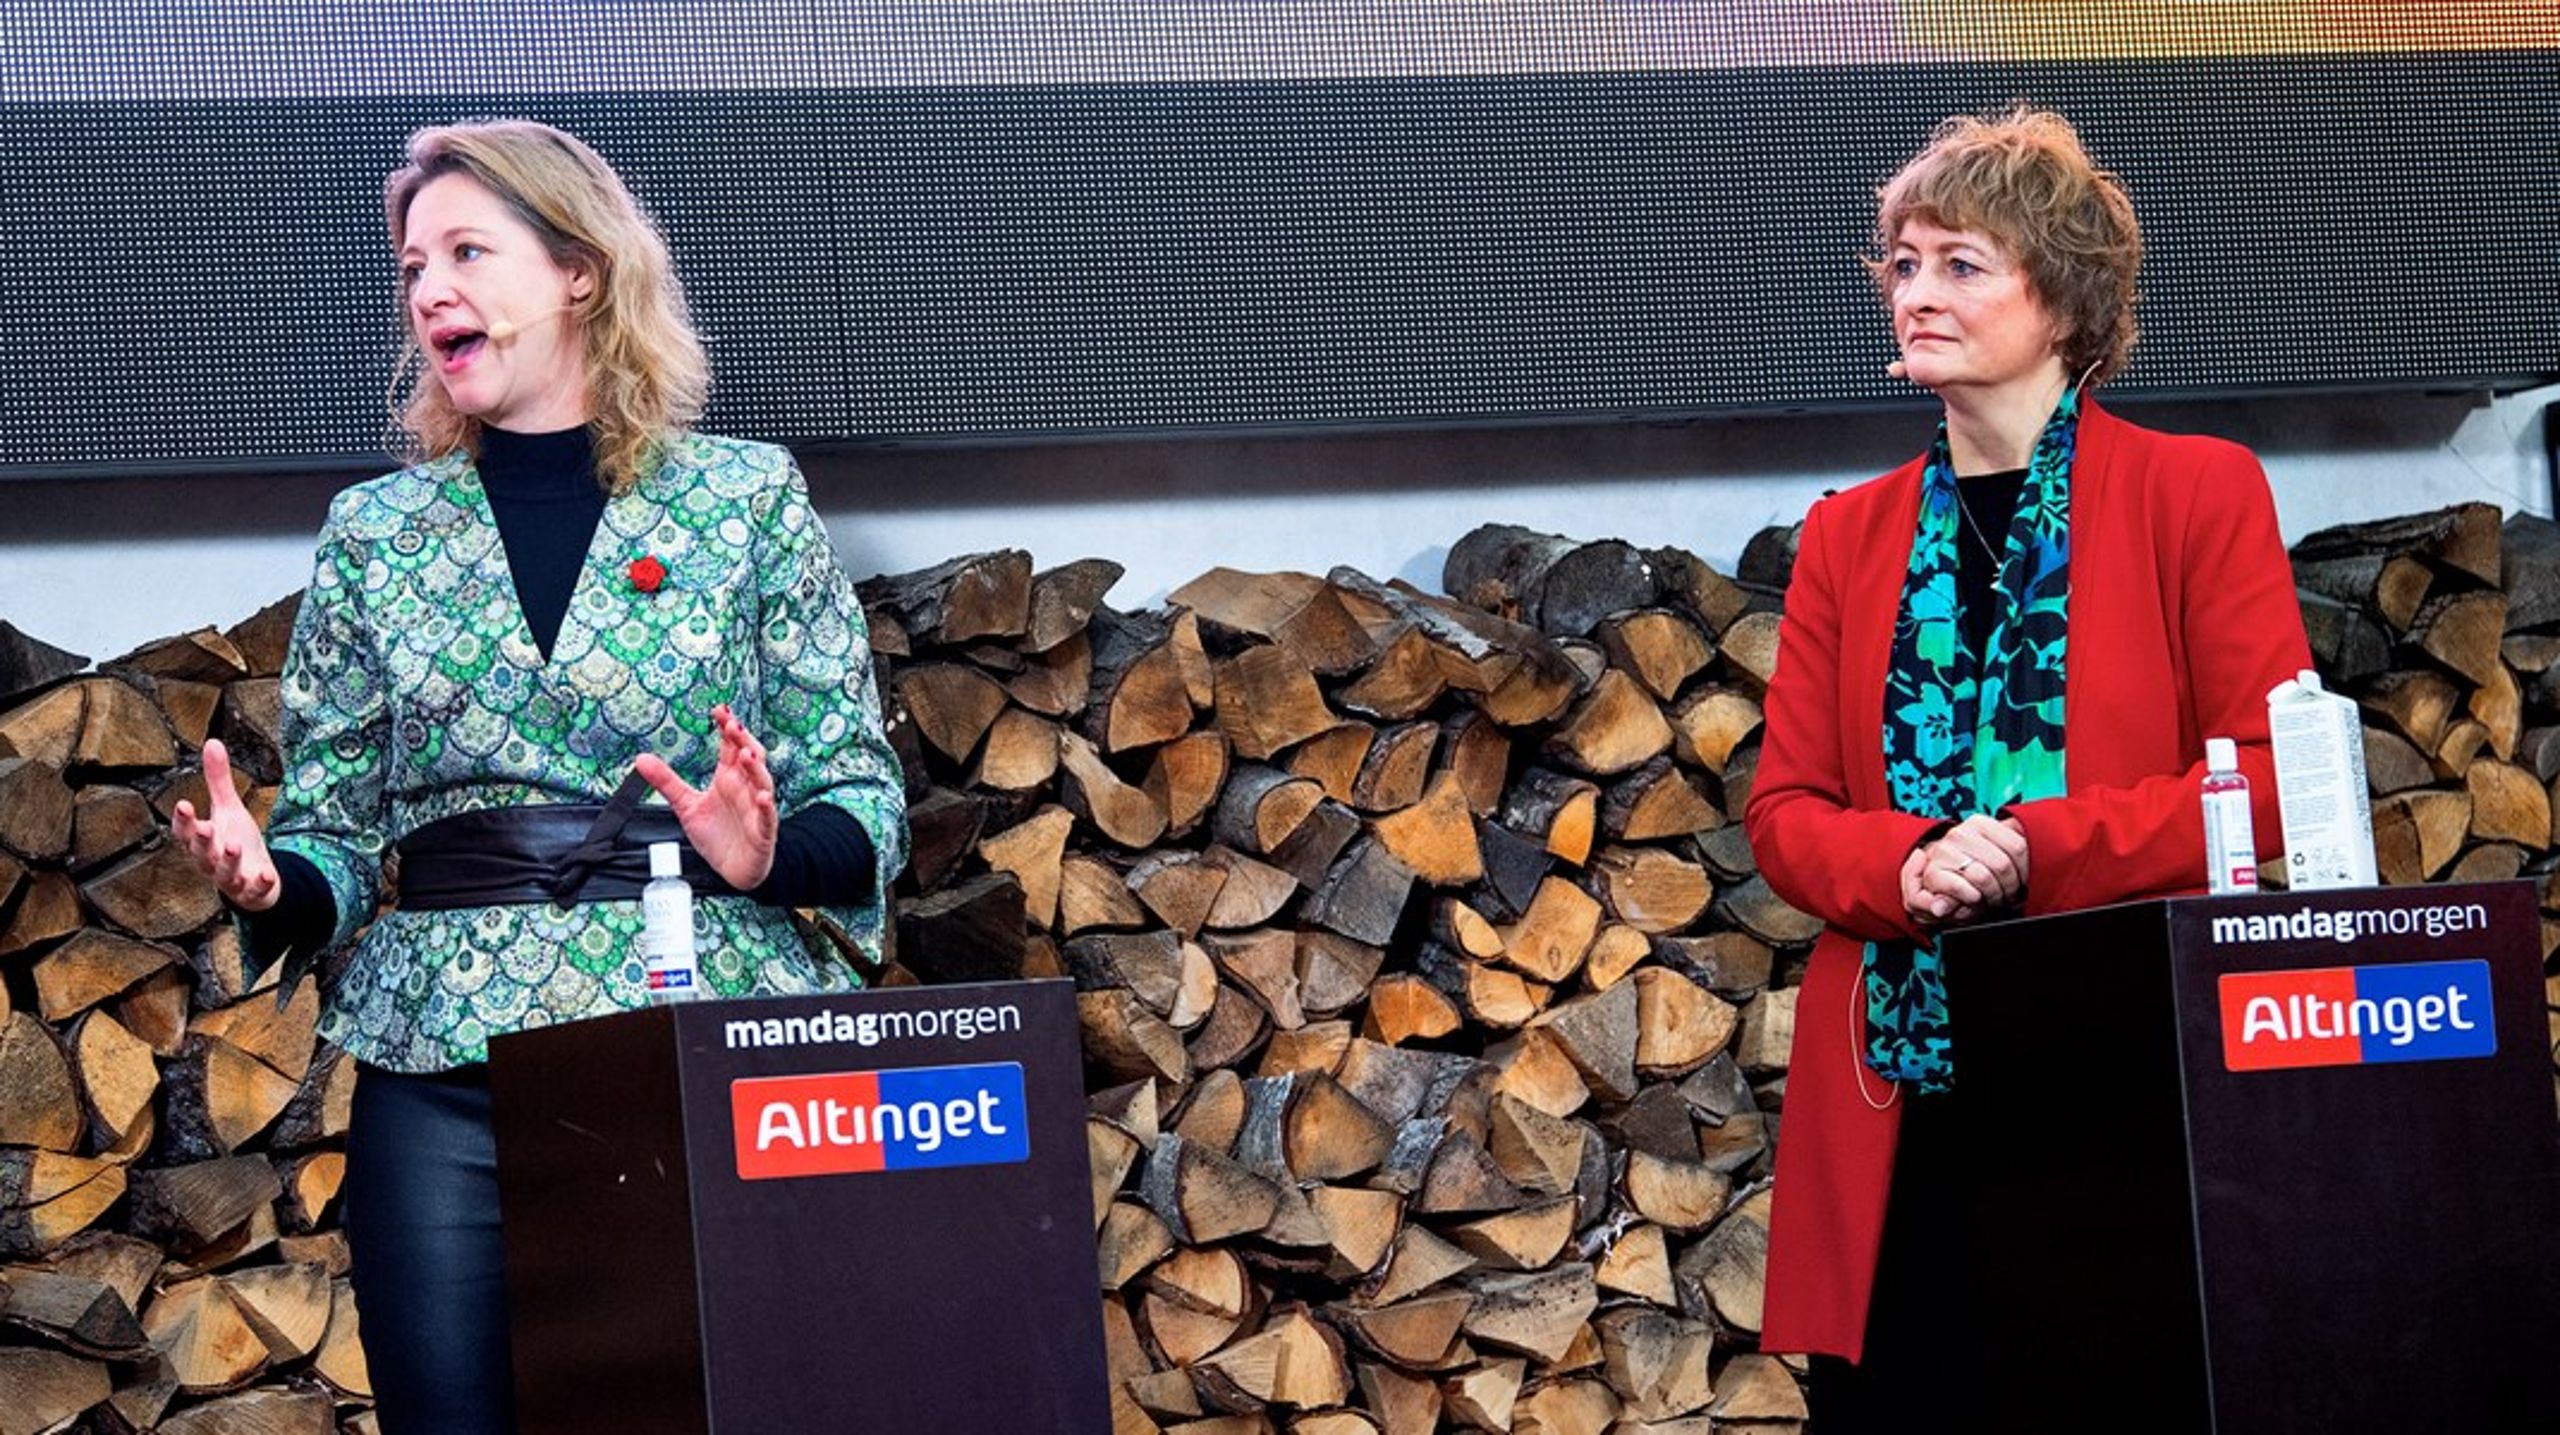 De politikere, der omtalte klima og miljø allermest, var de to københavnske spidskandidater, Sophie Hæstrup Andersen (S) og Line Barfod (EL).